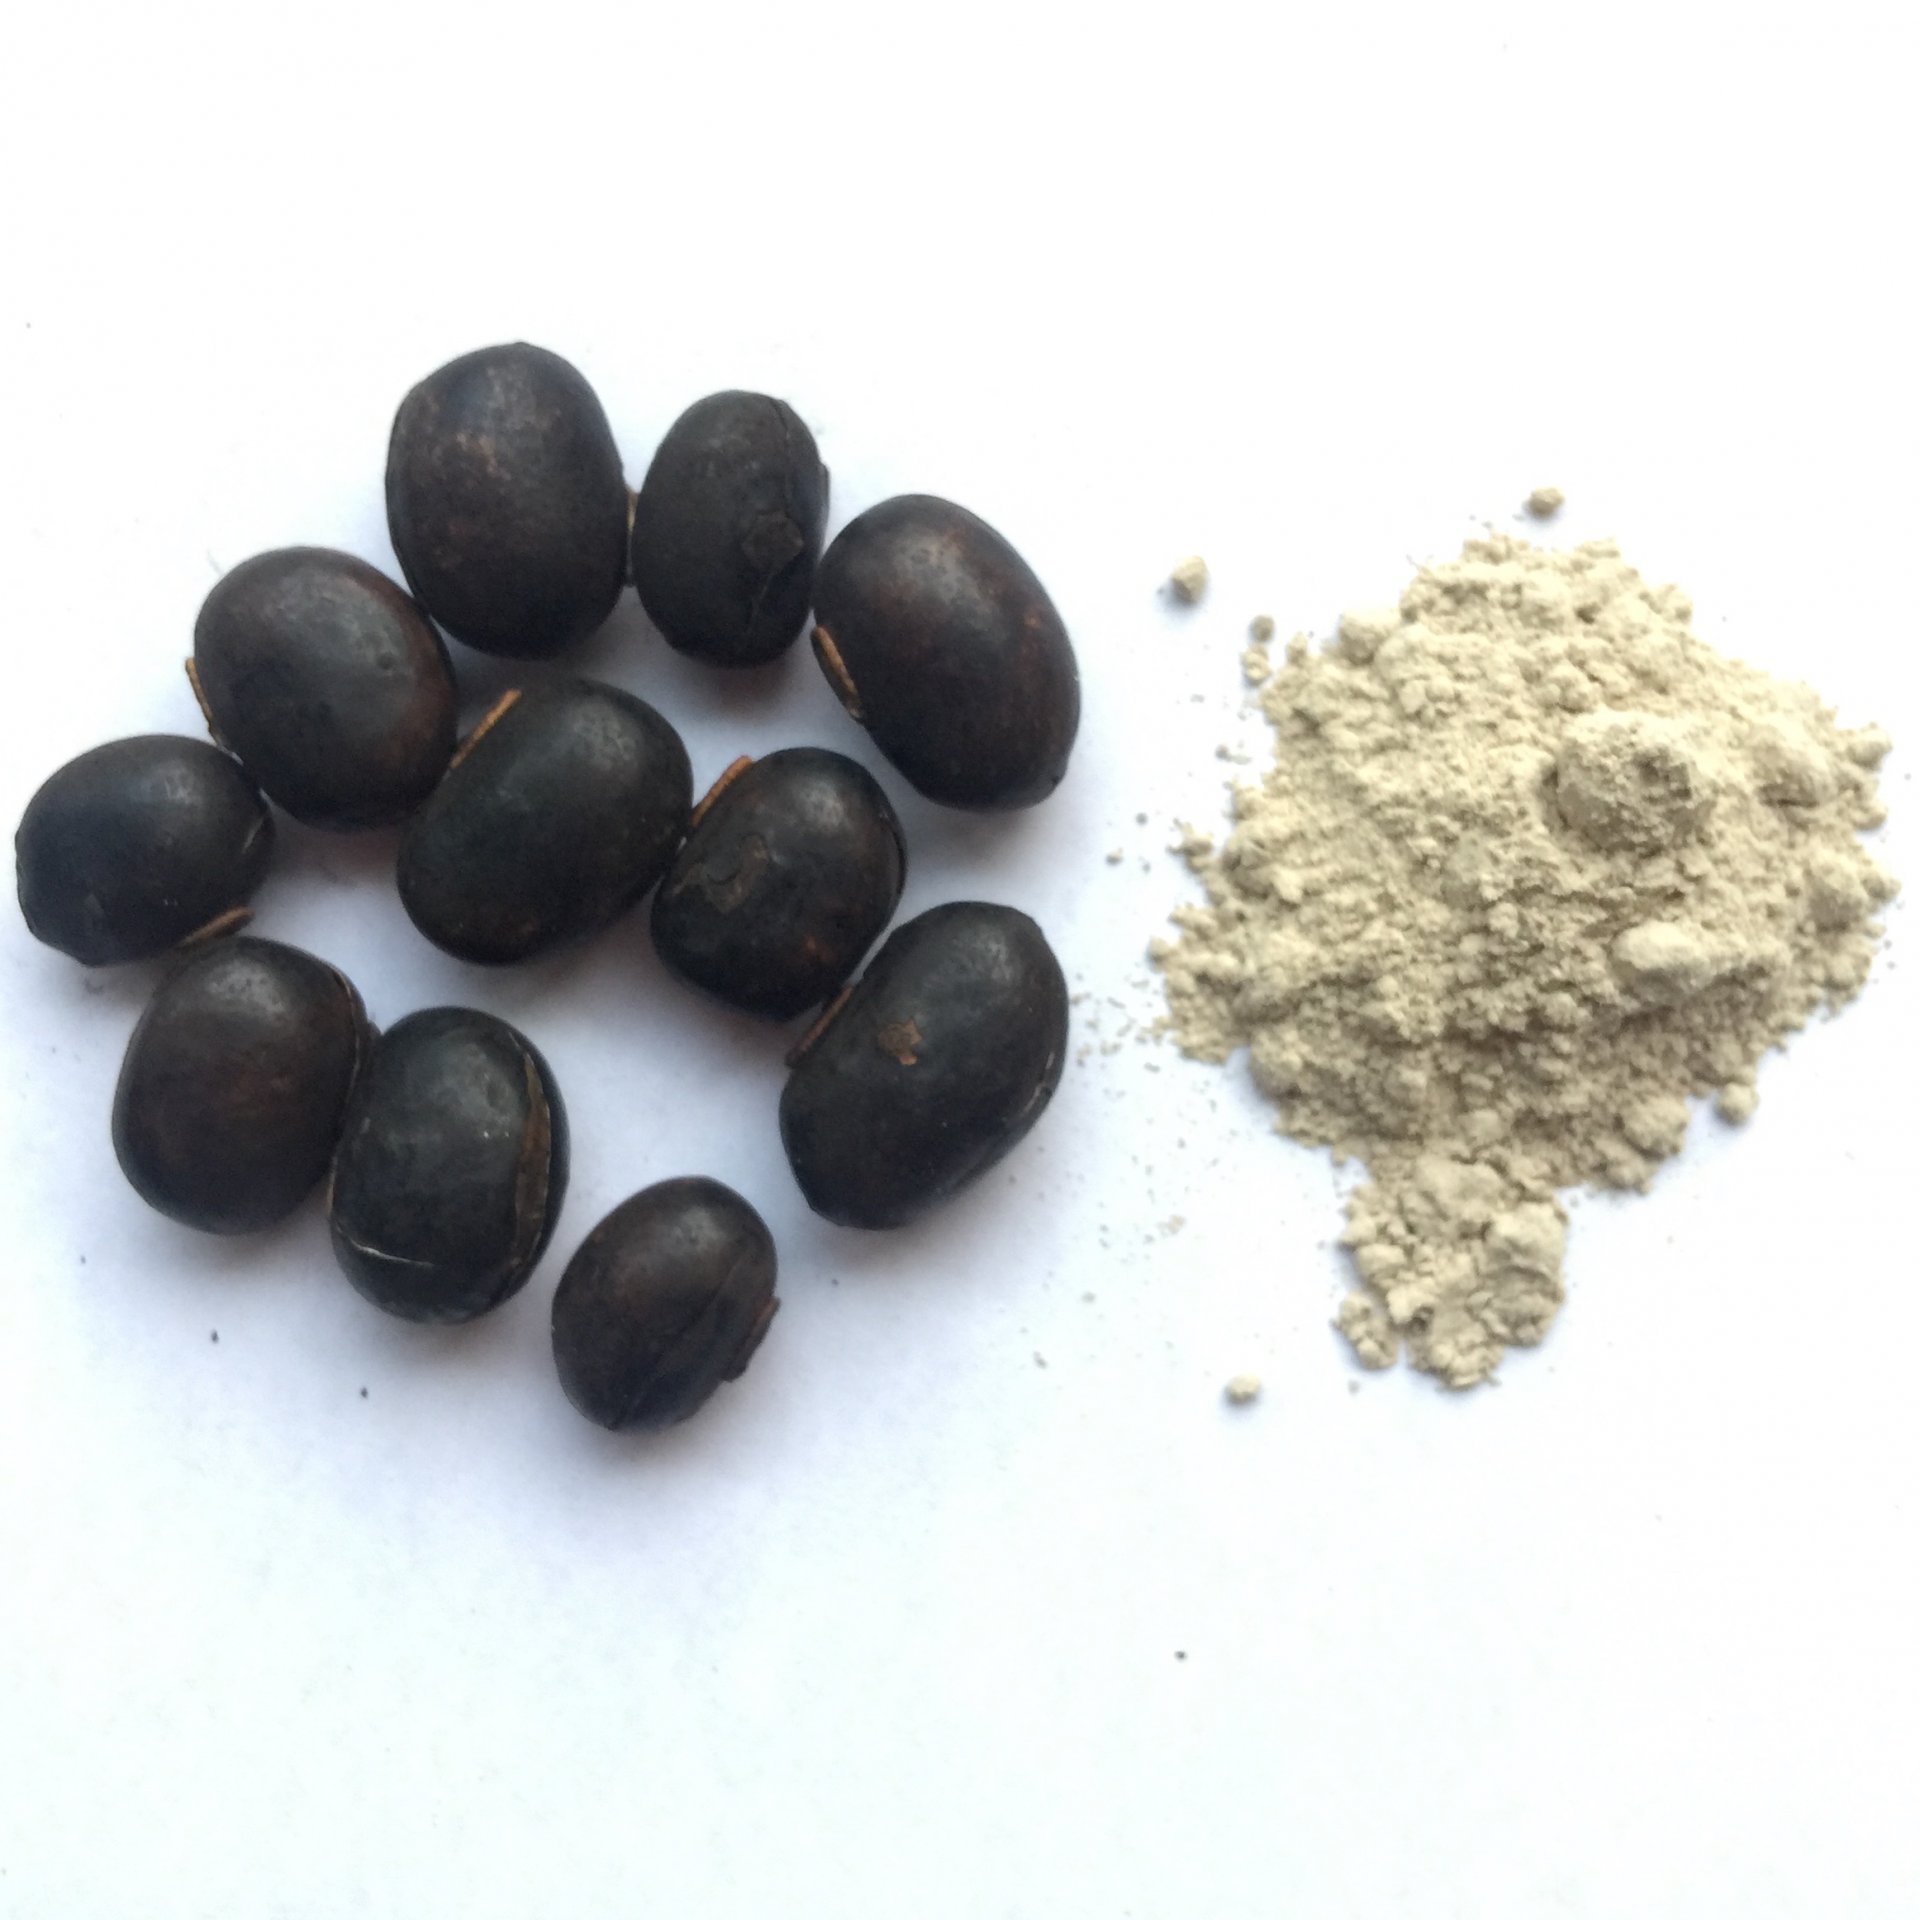 Mucuna Pruriens Seed Powder 100g